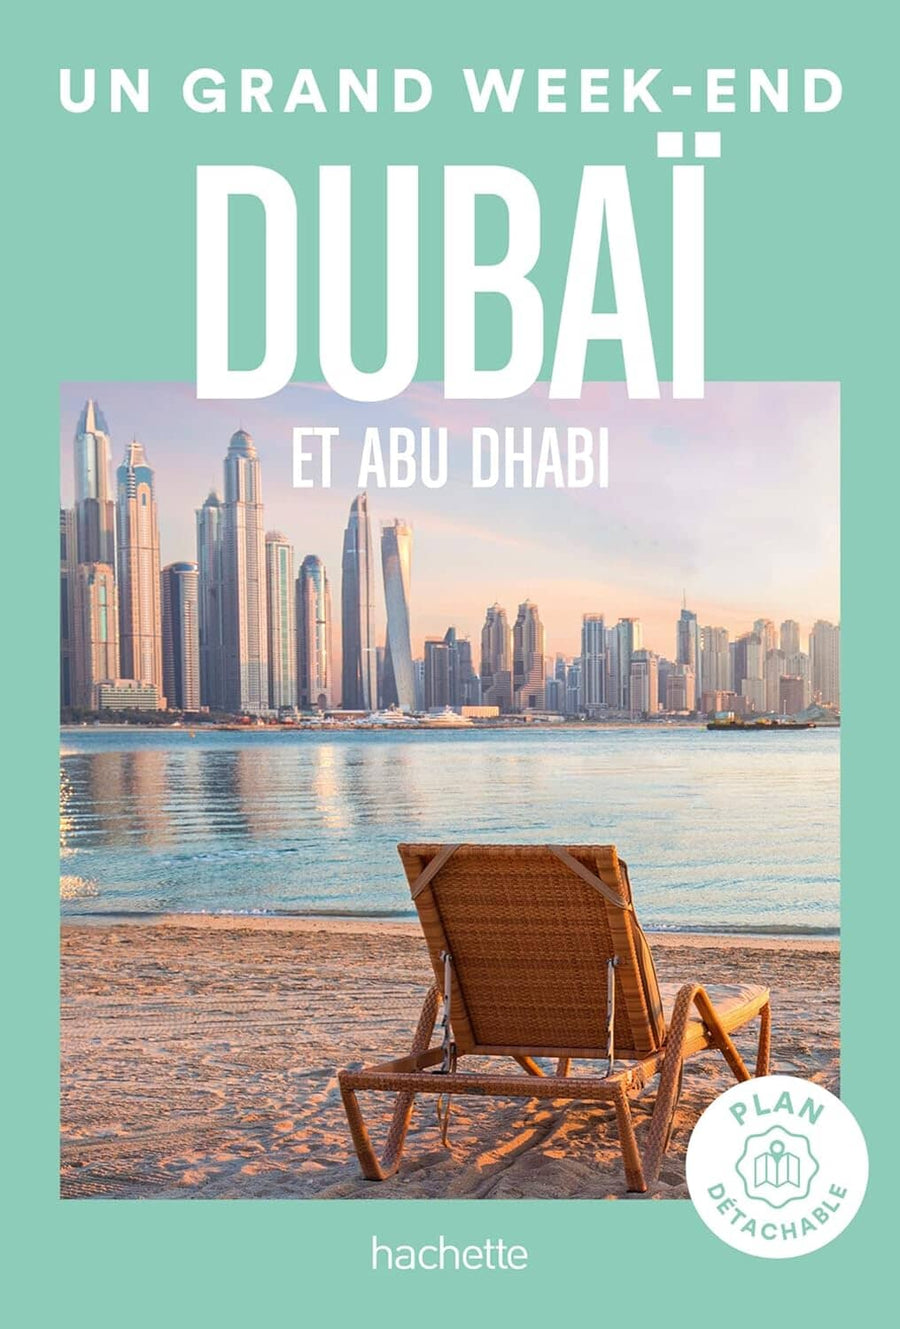 Guide de voyage de poche - Un Grand Week-end à Dubaï & Abu Dhabi - Édition 2023 | Hachette guide petit format Hachette 